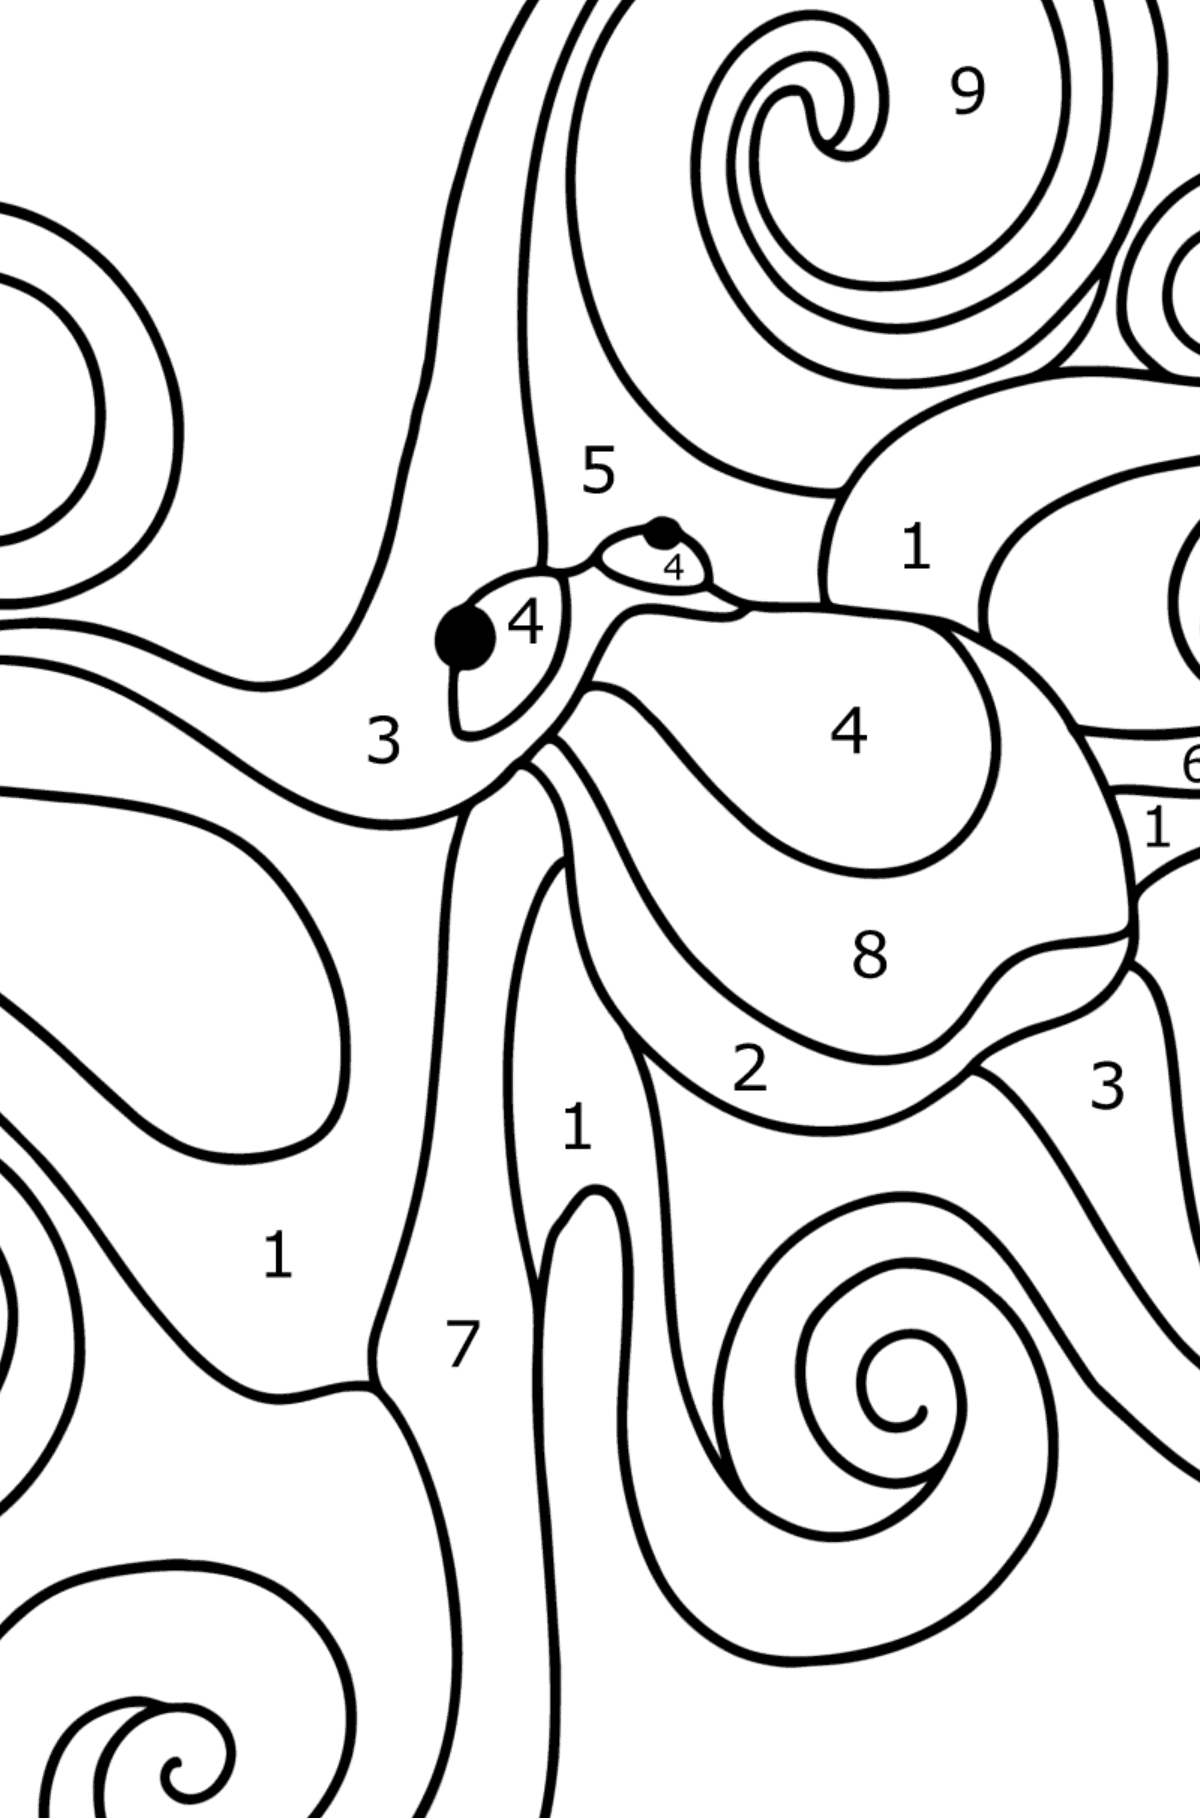 Ausmalbild Gewöhnlicher Oktopus - Malen nach Zahlen für Kinder